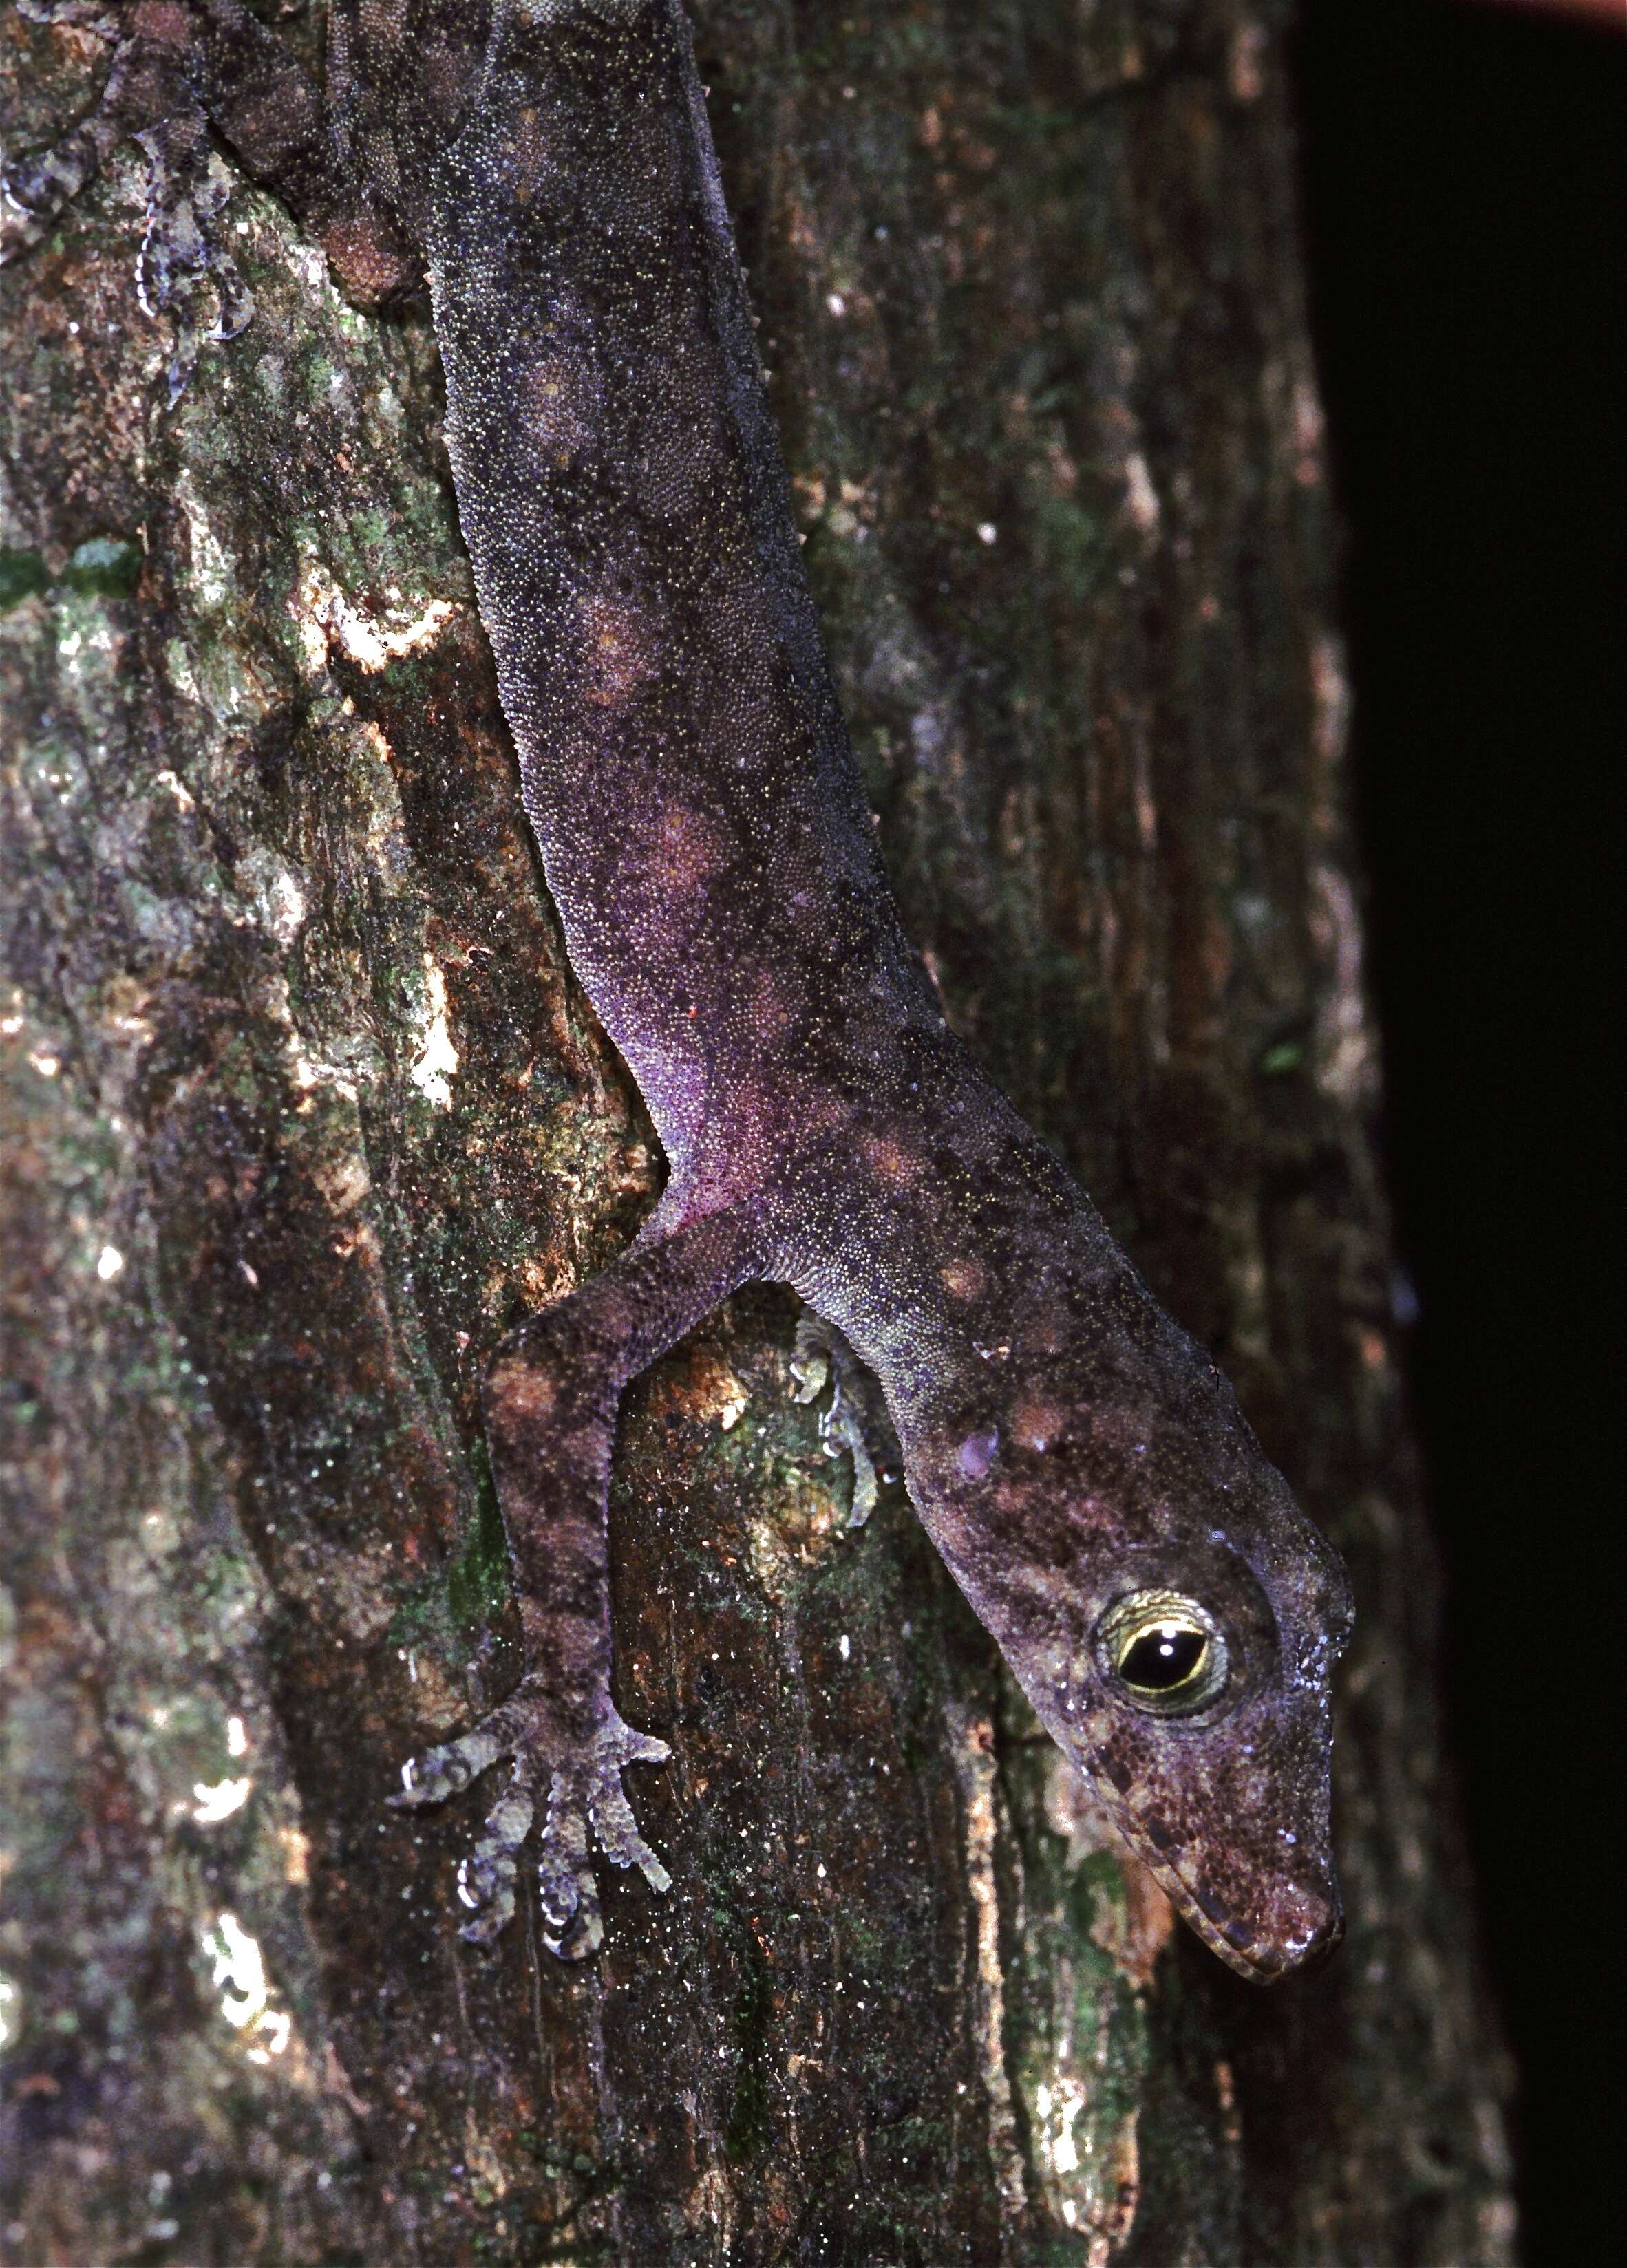 Image of Guinea Leaf-toed Gecko